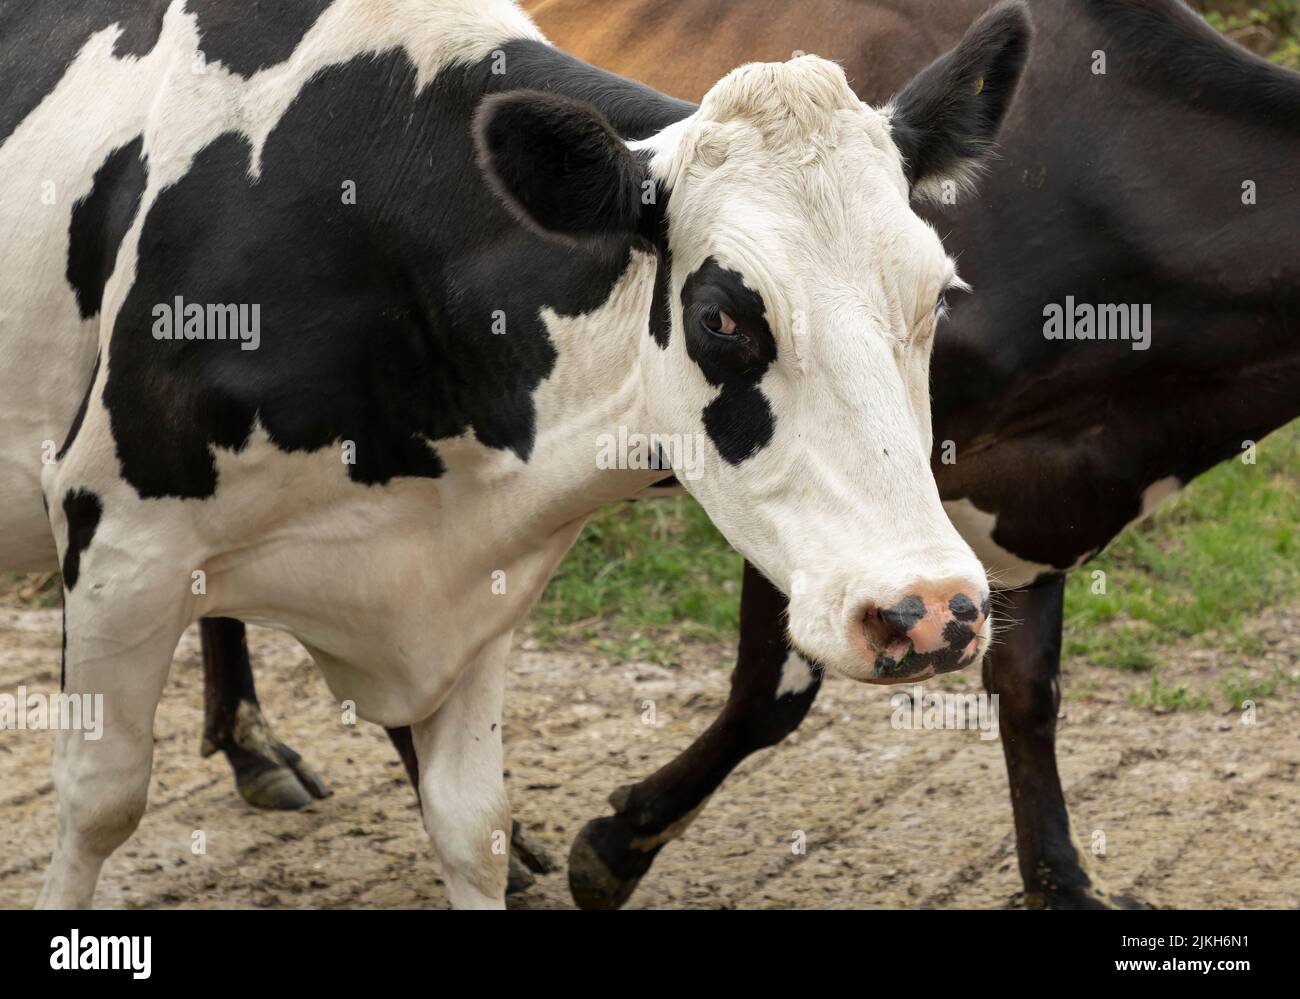 Schwarz-weiße Kuh, die mit einer punkigen Nase zum Melkstand läuft Stockfoto